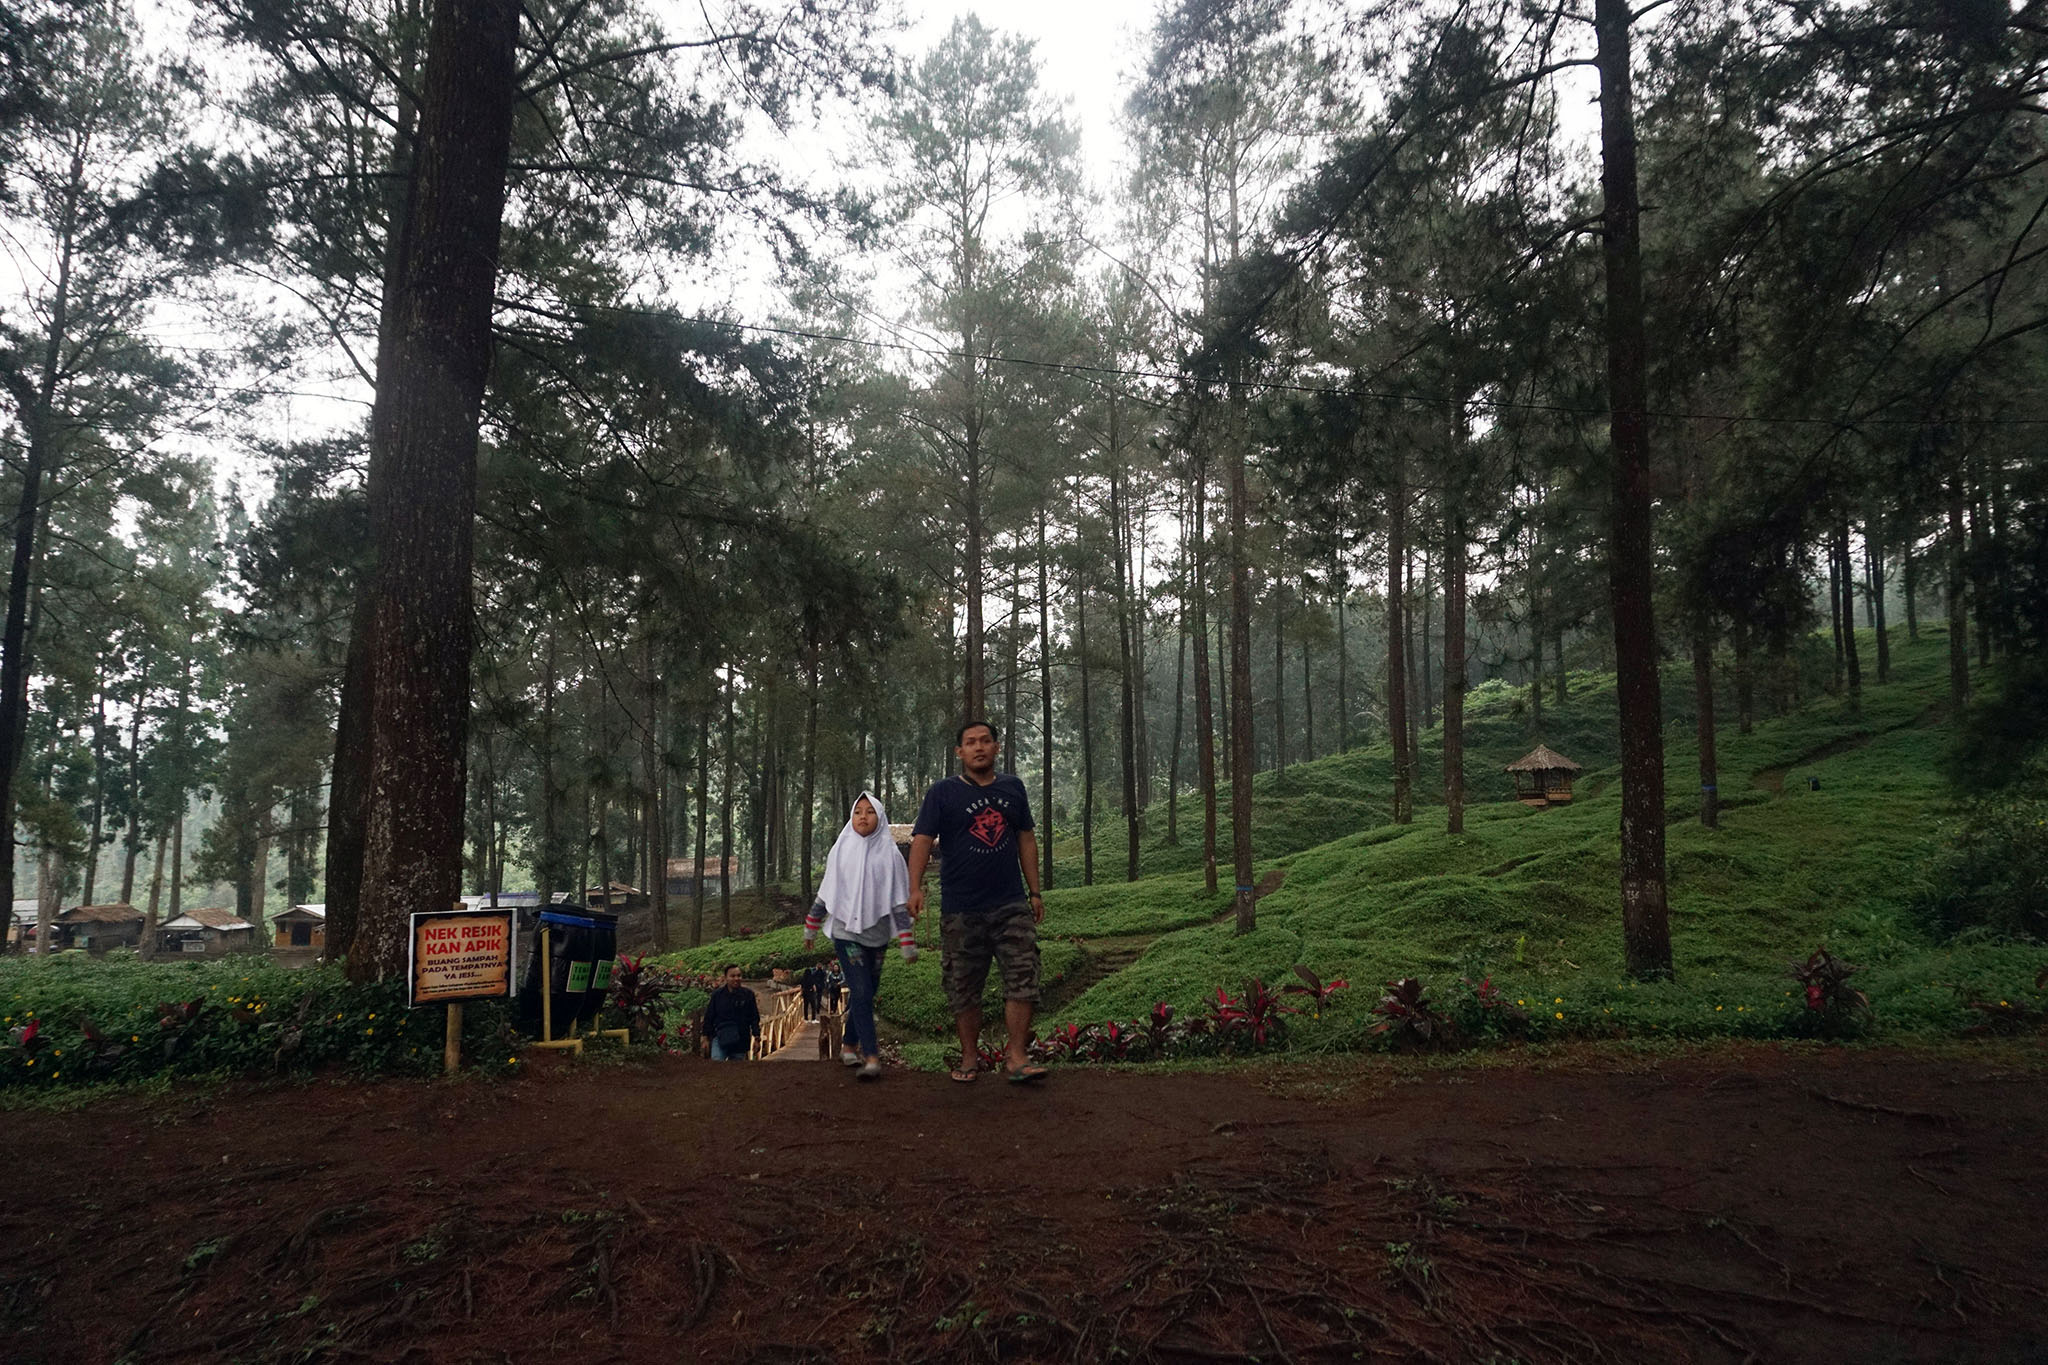 Pengunjung berjalan santai di kawasan hutan wisata hutan pinus, Limpakuwus, Kecamatan Sumbang, kompleks Wana Wisata Baturraden, Banyumas | Foto: L Darmawan/Mongabay Indonesia